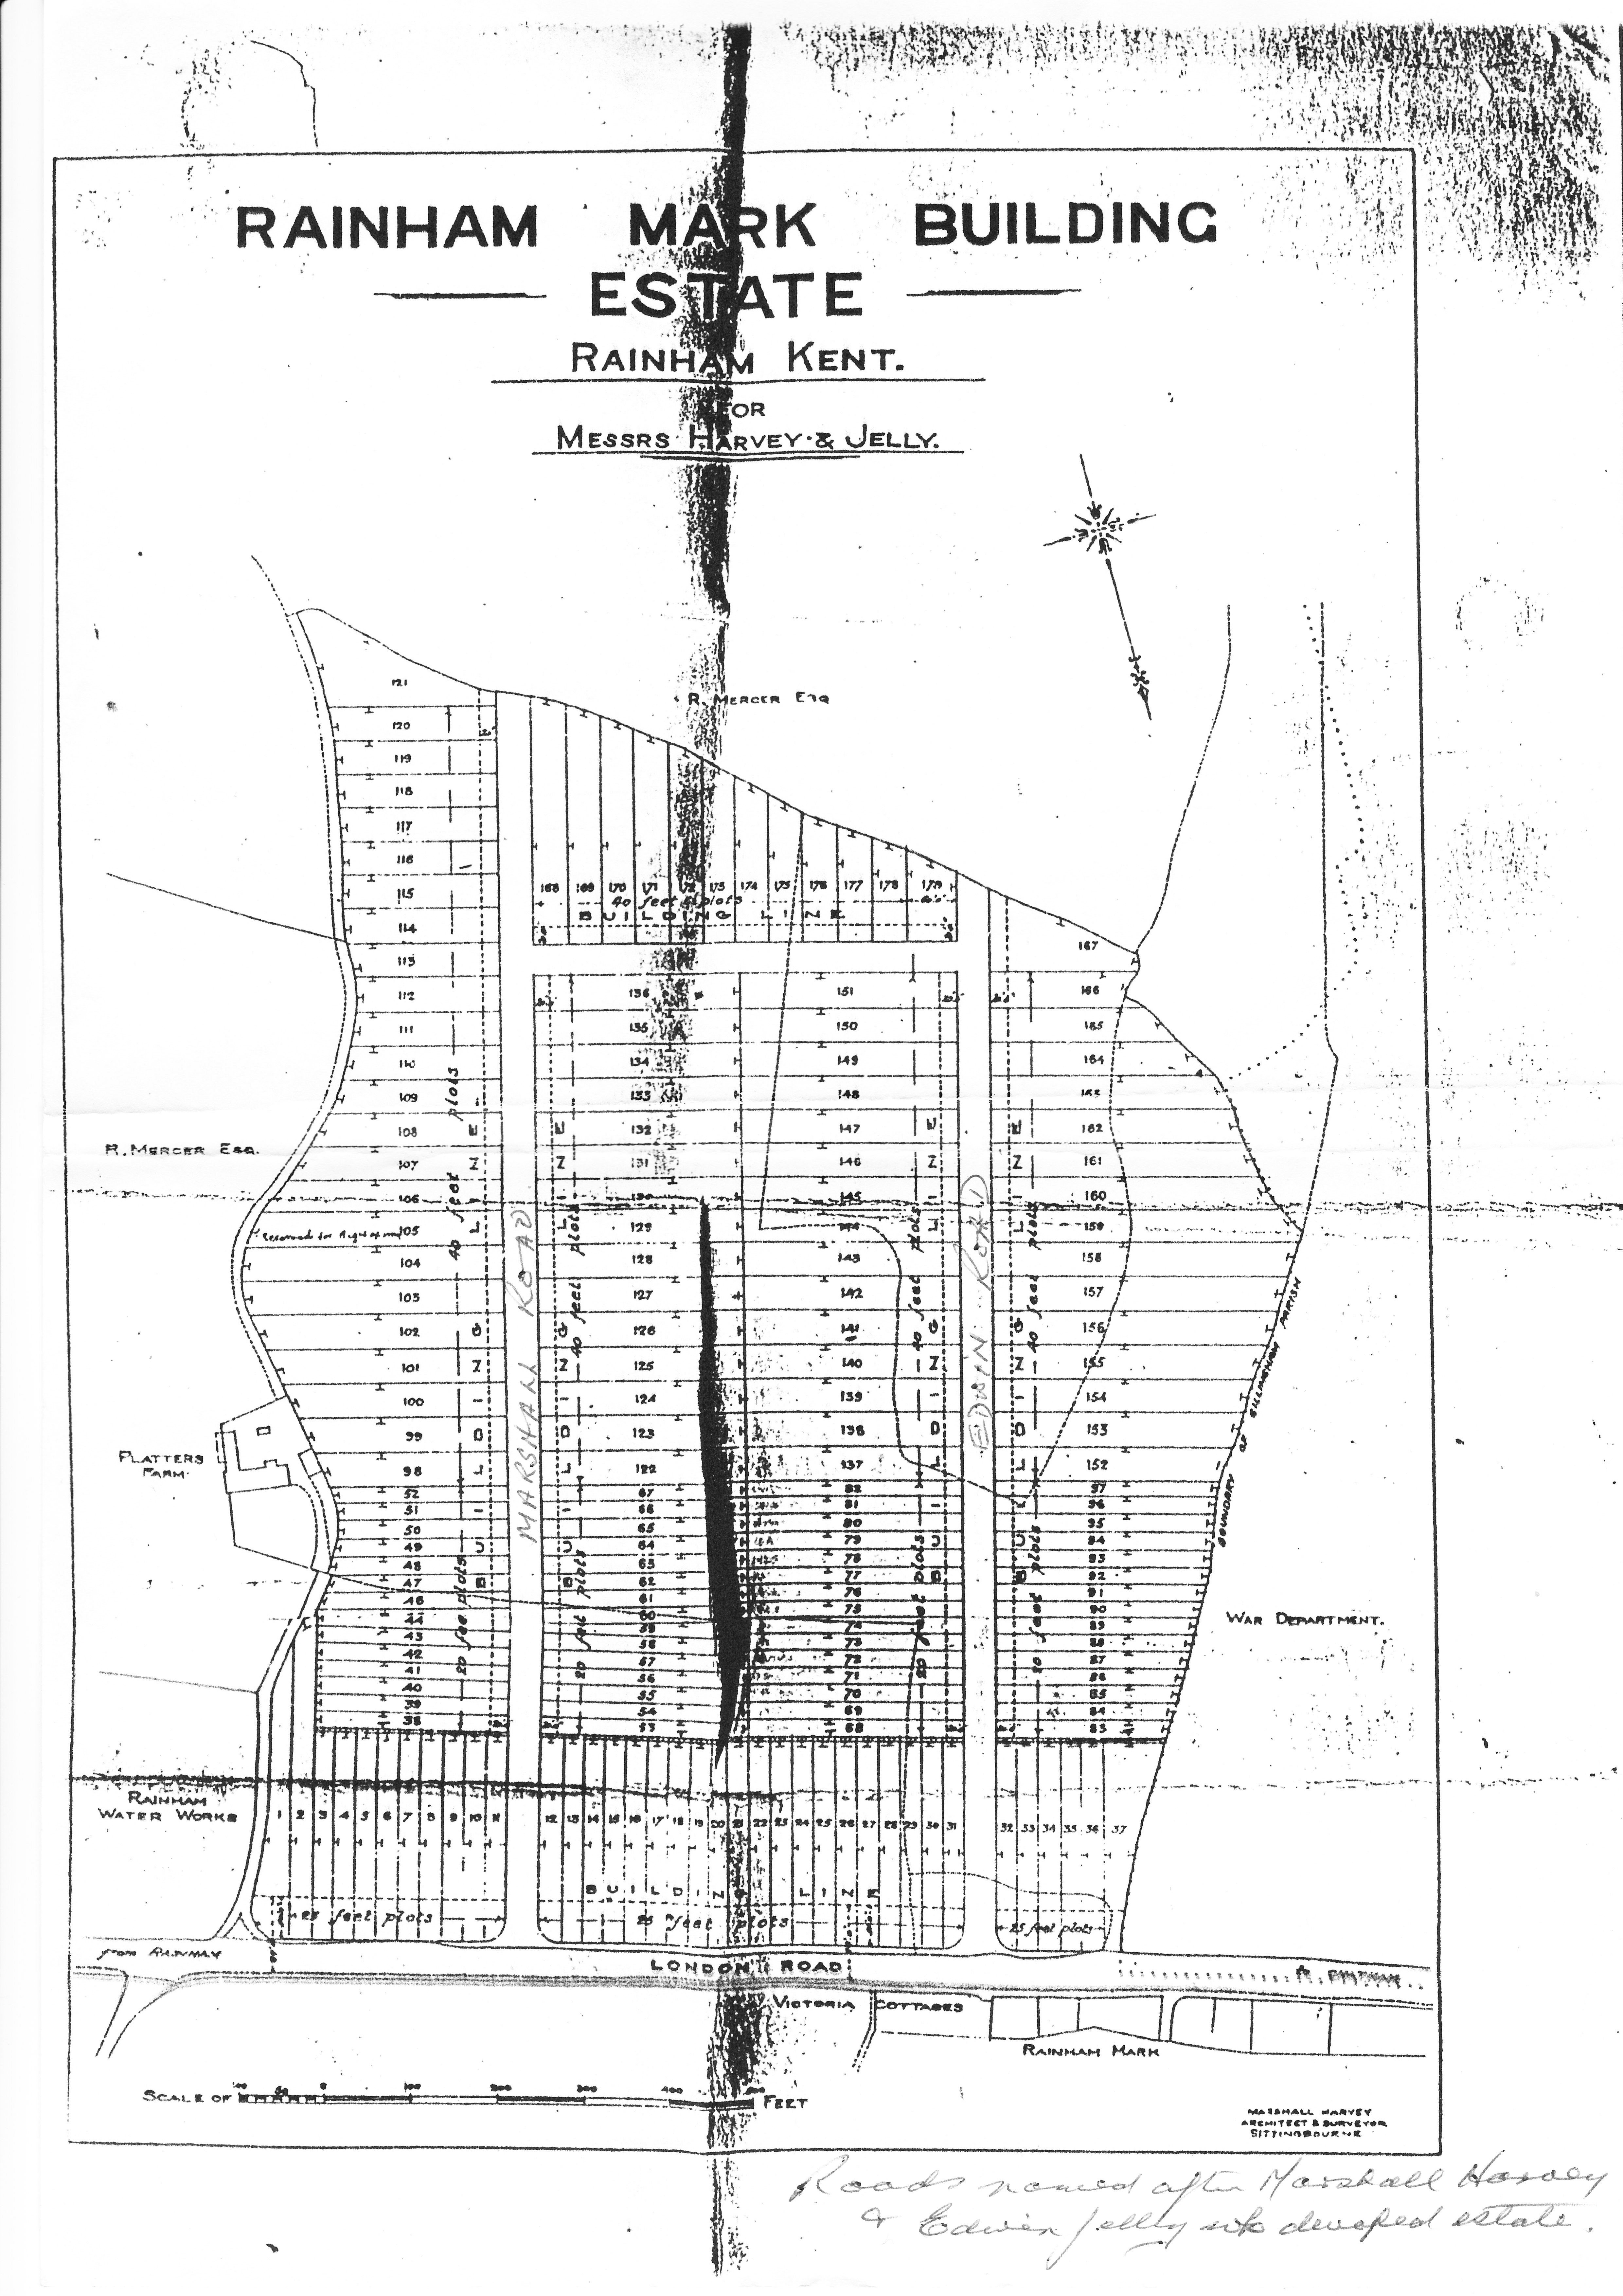 Rainham Mark Building estate plans 1923